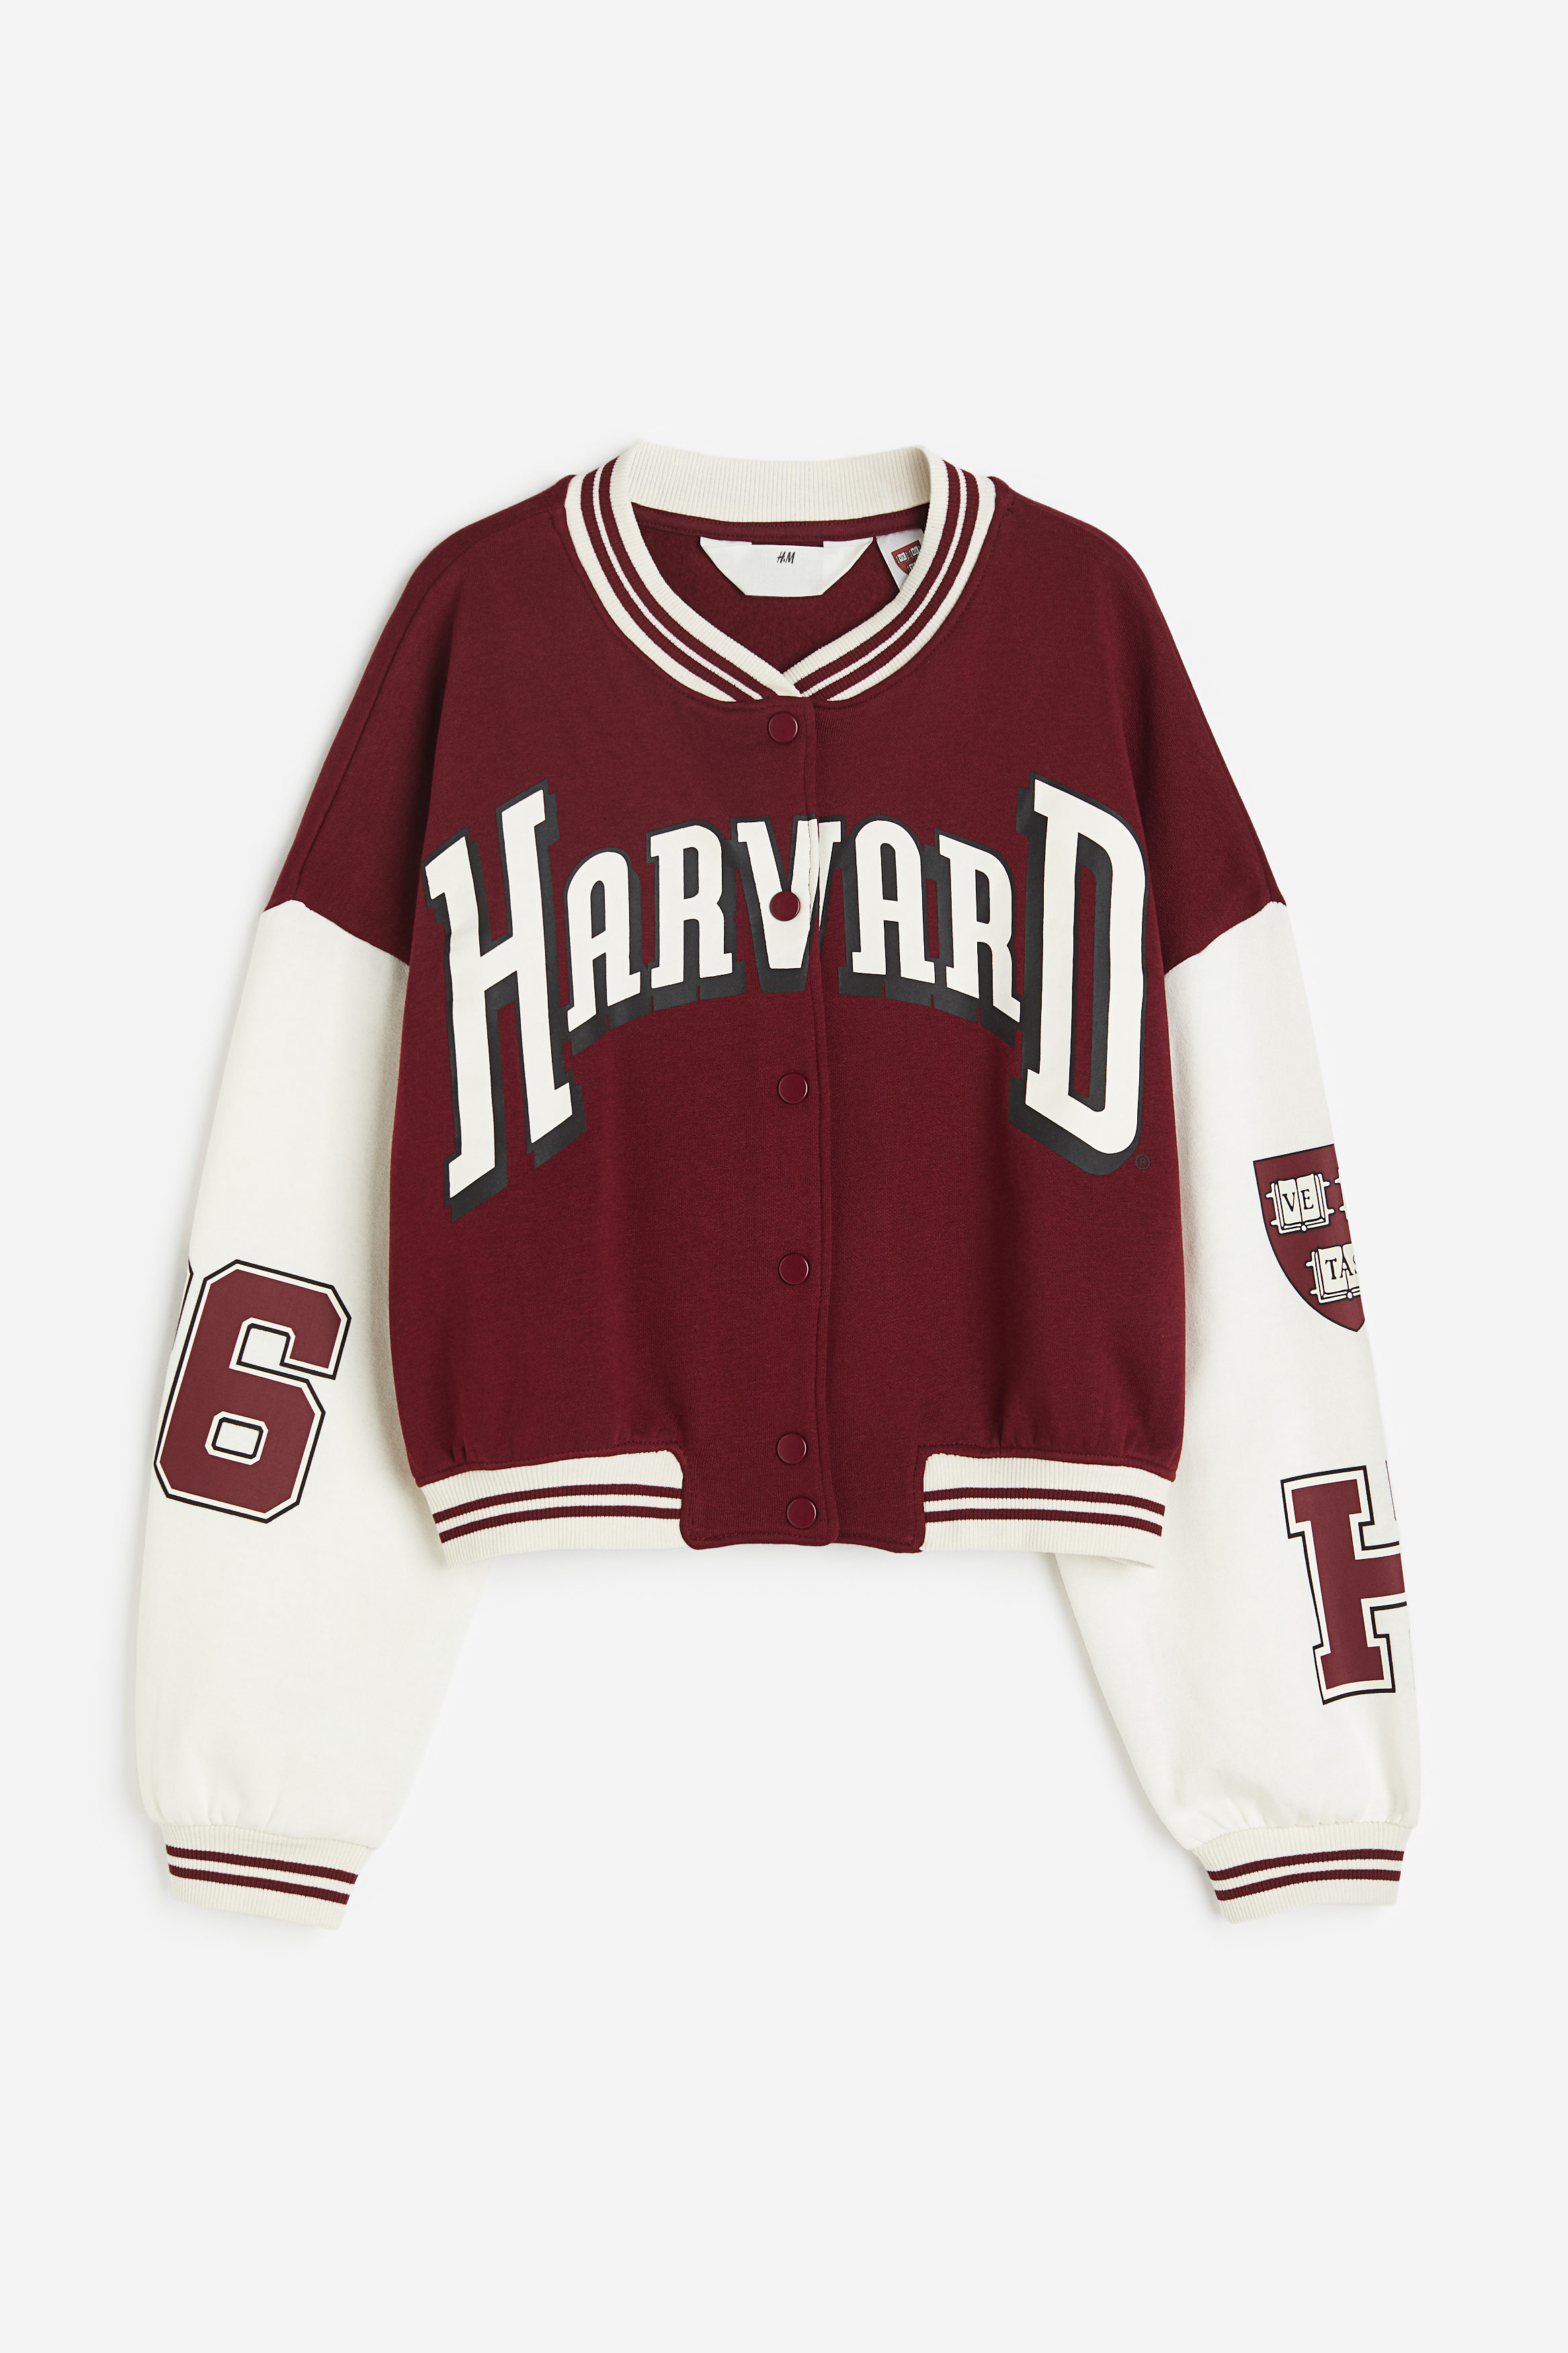 Vintage Harvard Long Gone Sweatshirt | Sweatshirts, Vintage, Harvard  sweatshirt